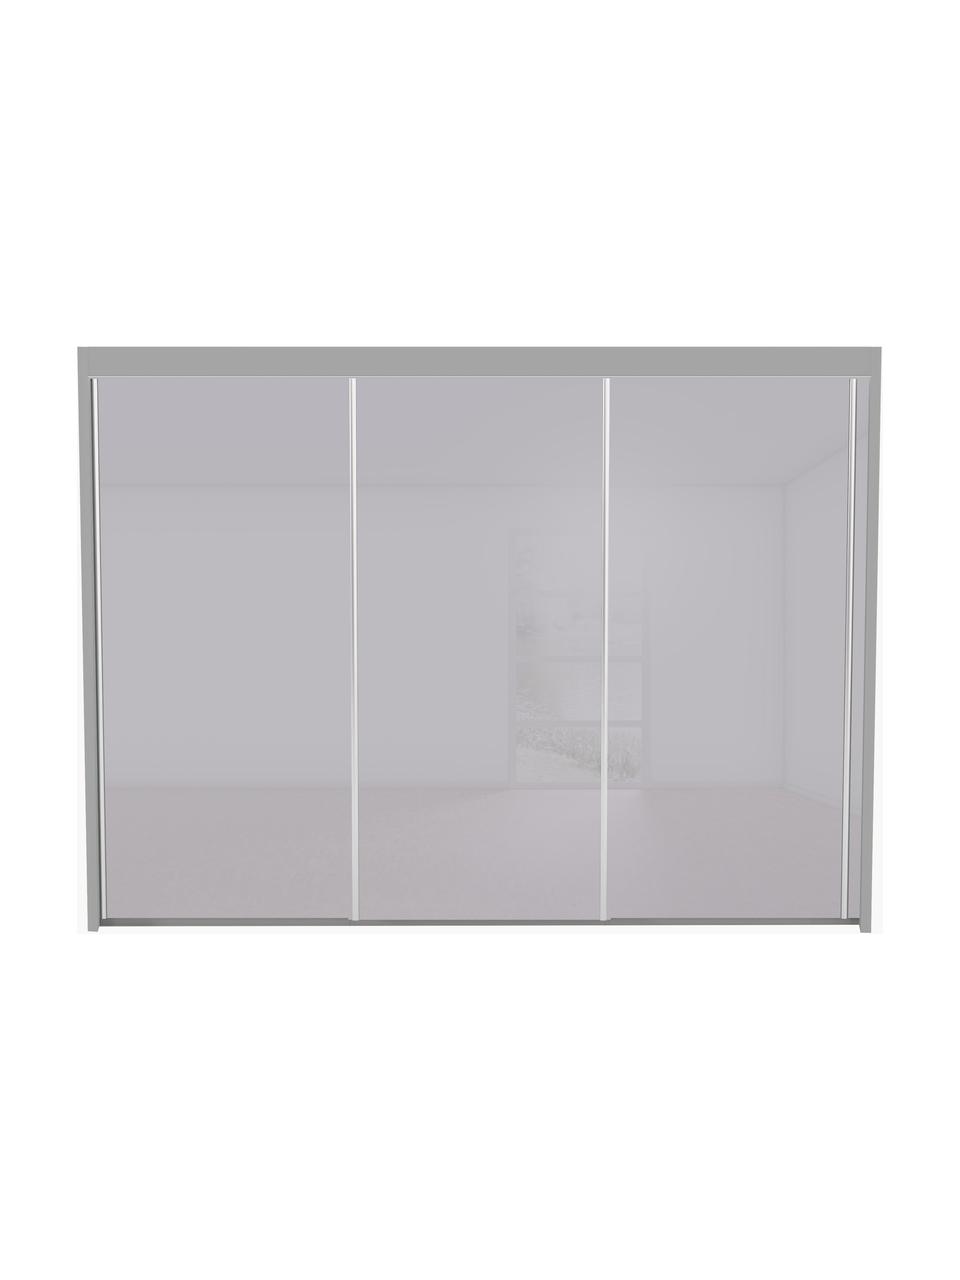 Schwebetürenschrank Imperial mit Beleuchtung, Grau, B 300 x H 197 cm